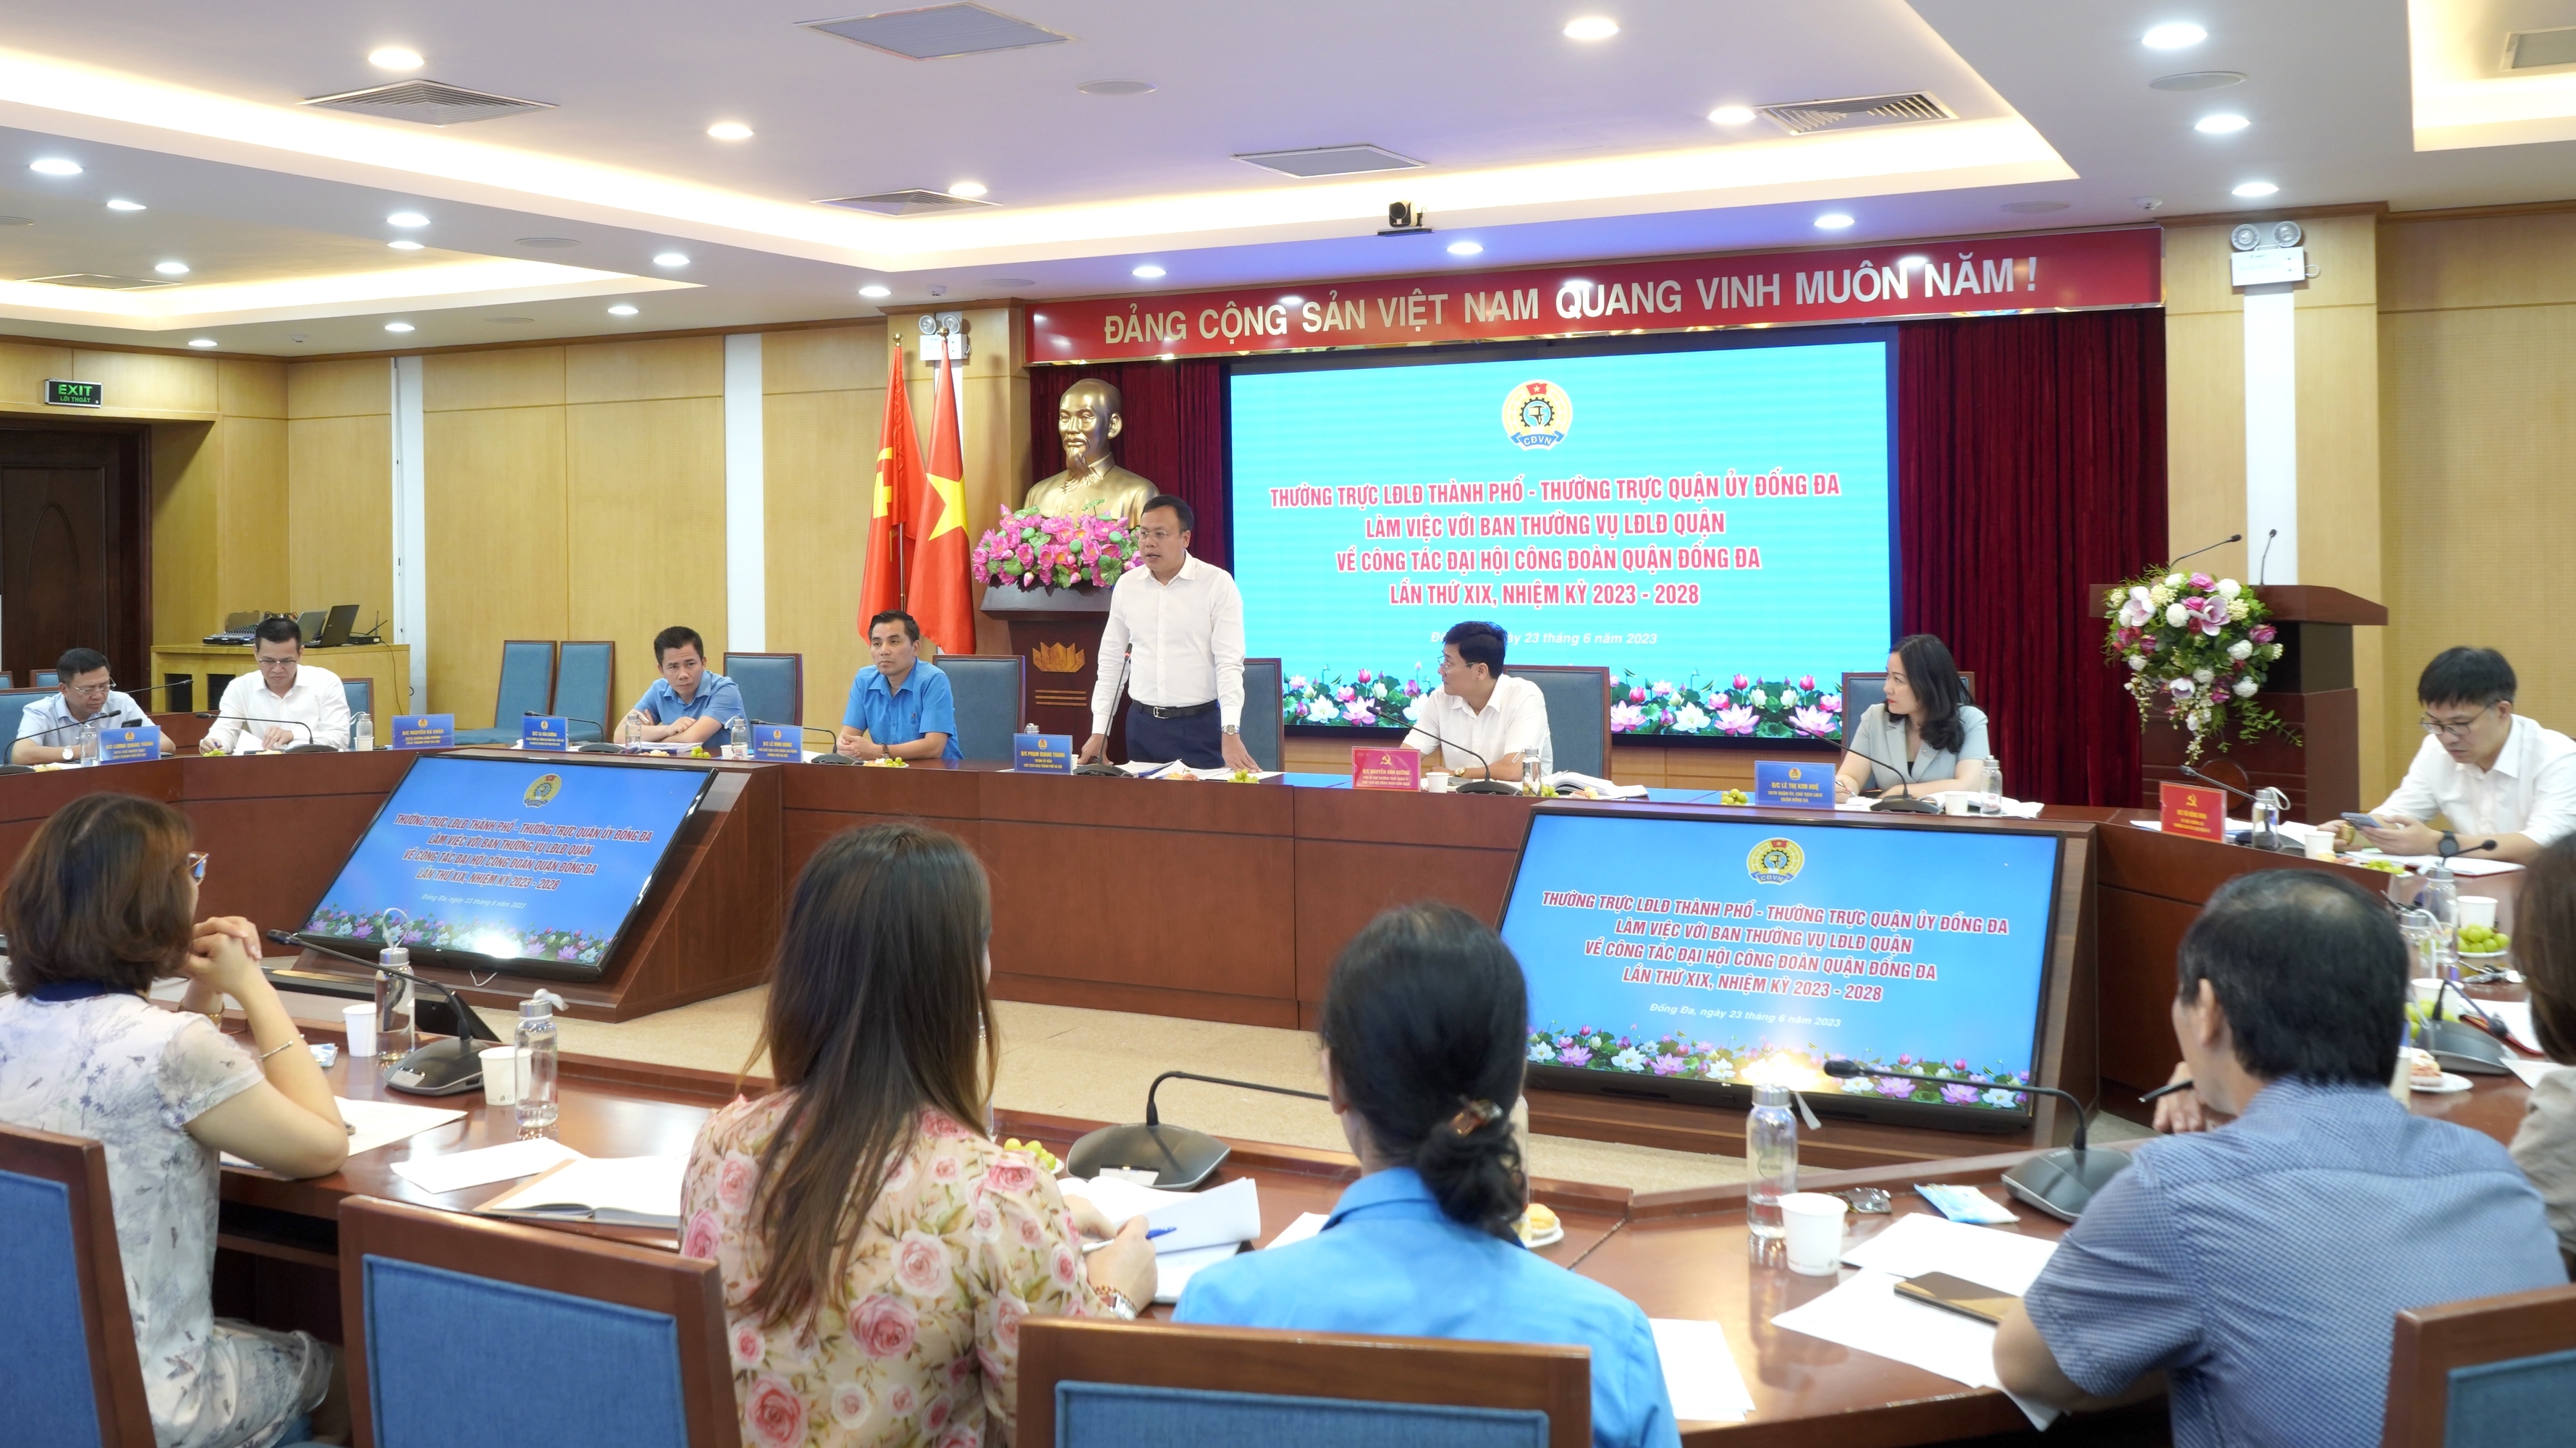 Lãnh đạo LĐLĐ thành phố Hà Nội duyệt chương trình Đại hội Công đoàn quận Đống Đa lần thứ XIX